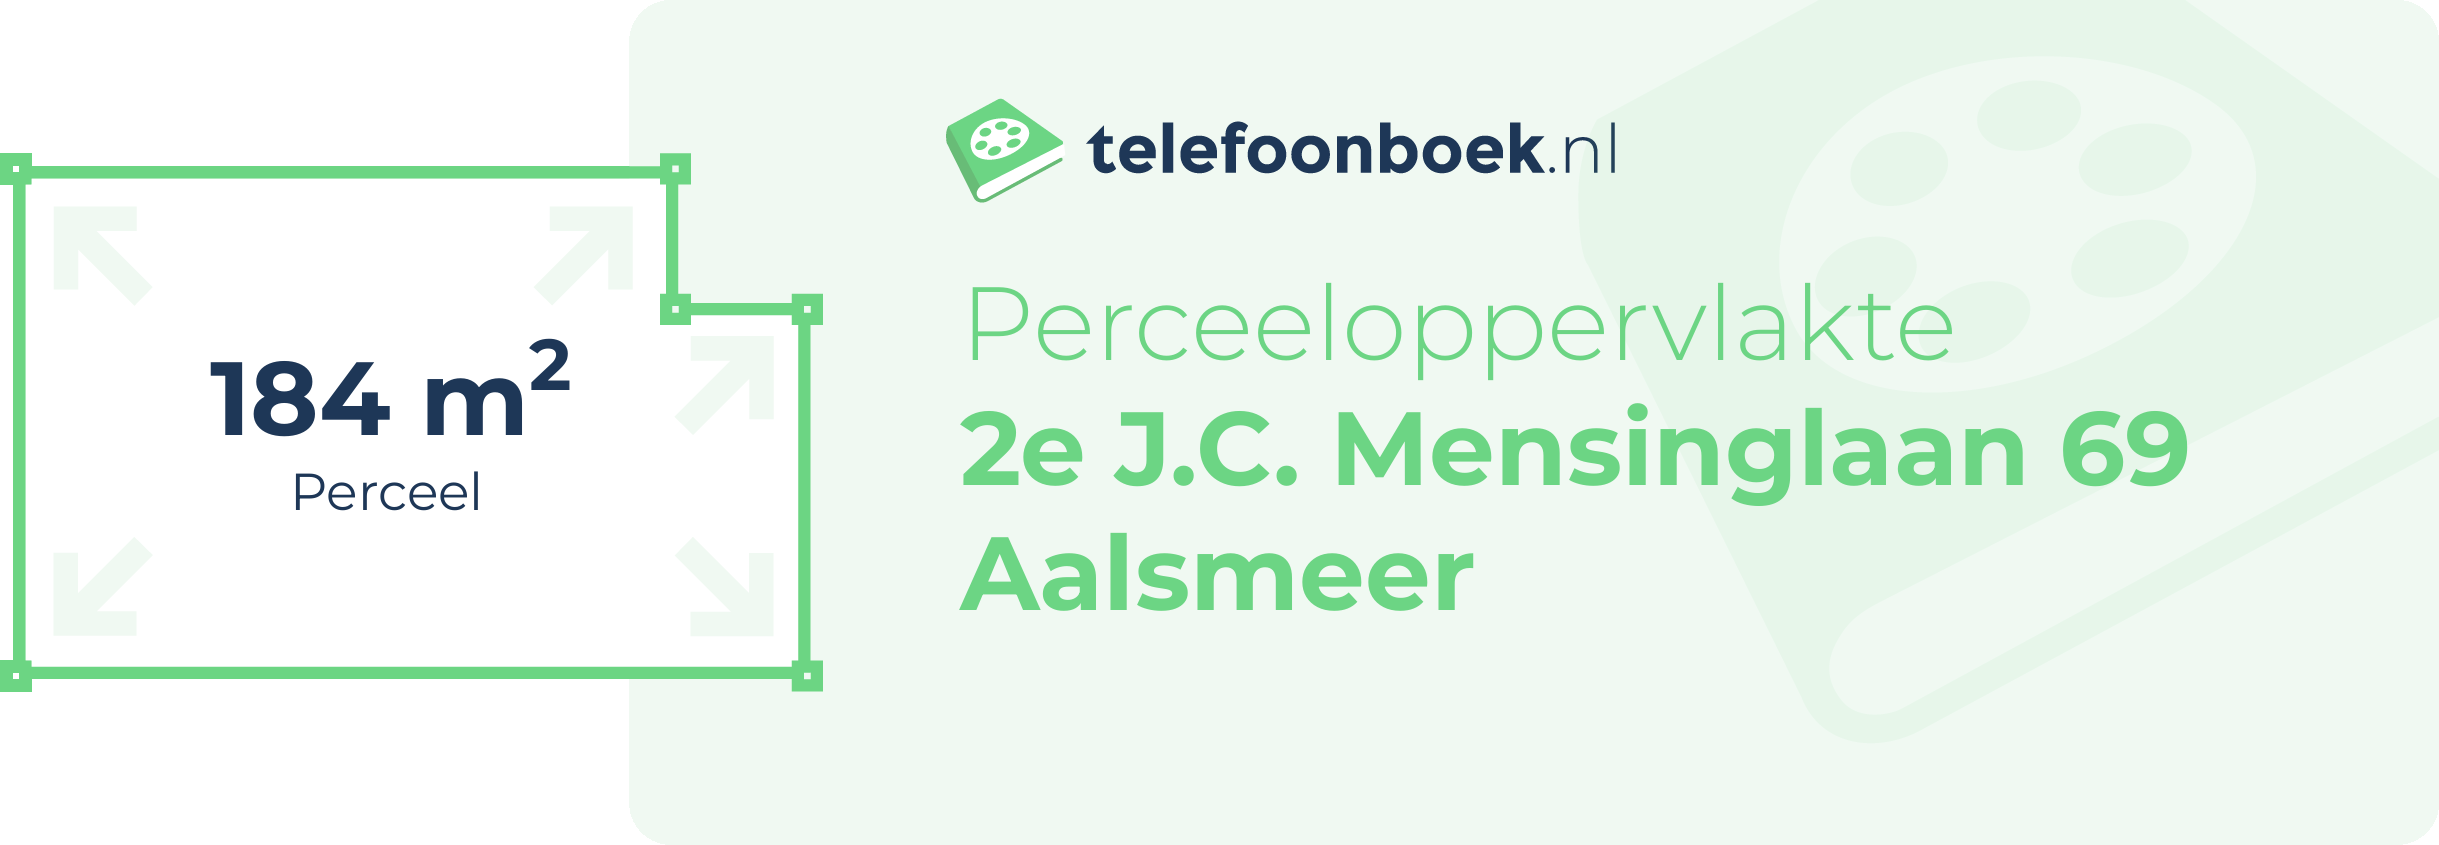 Perceeloppervlakte 2e J.C. Mensinglaan 69 Aalsmeer